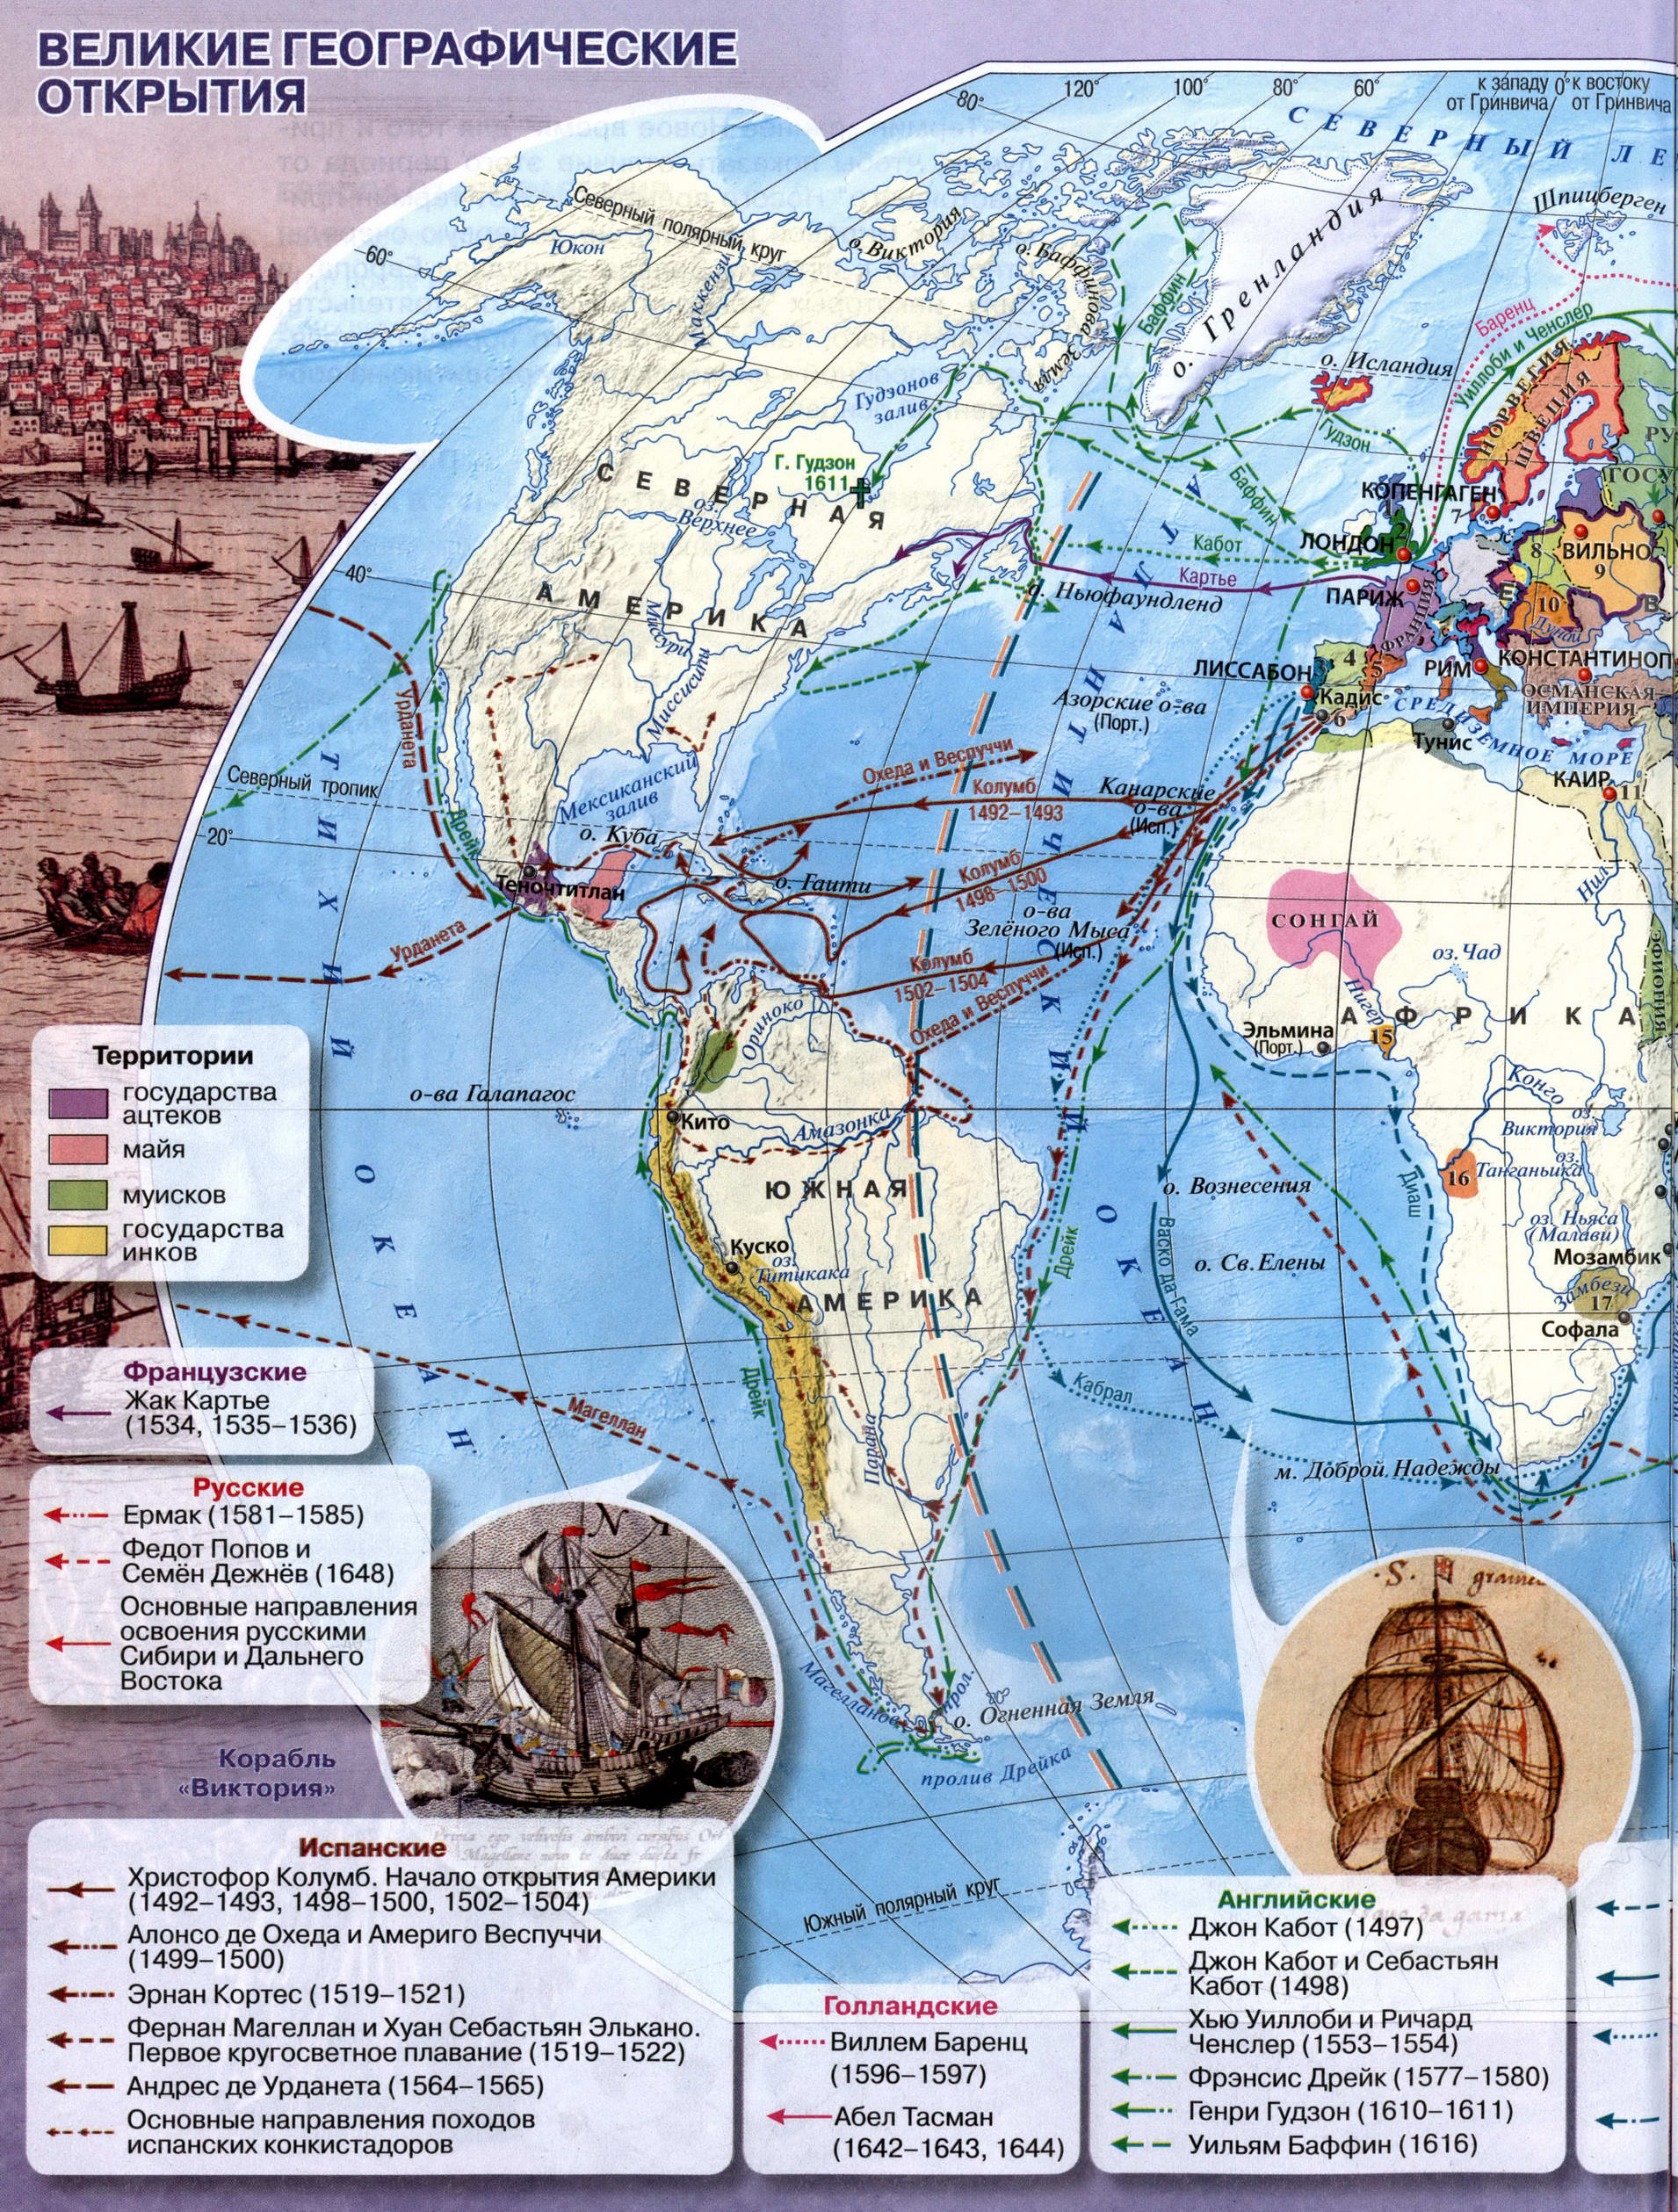 Великие географические открытия - Атлас История Нового времени